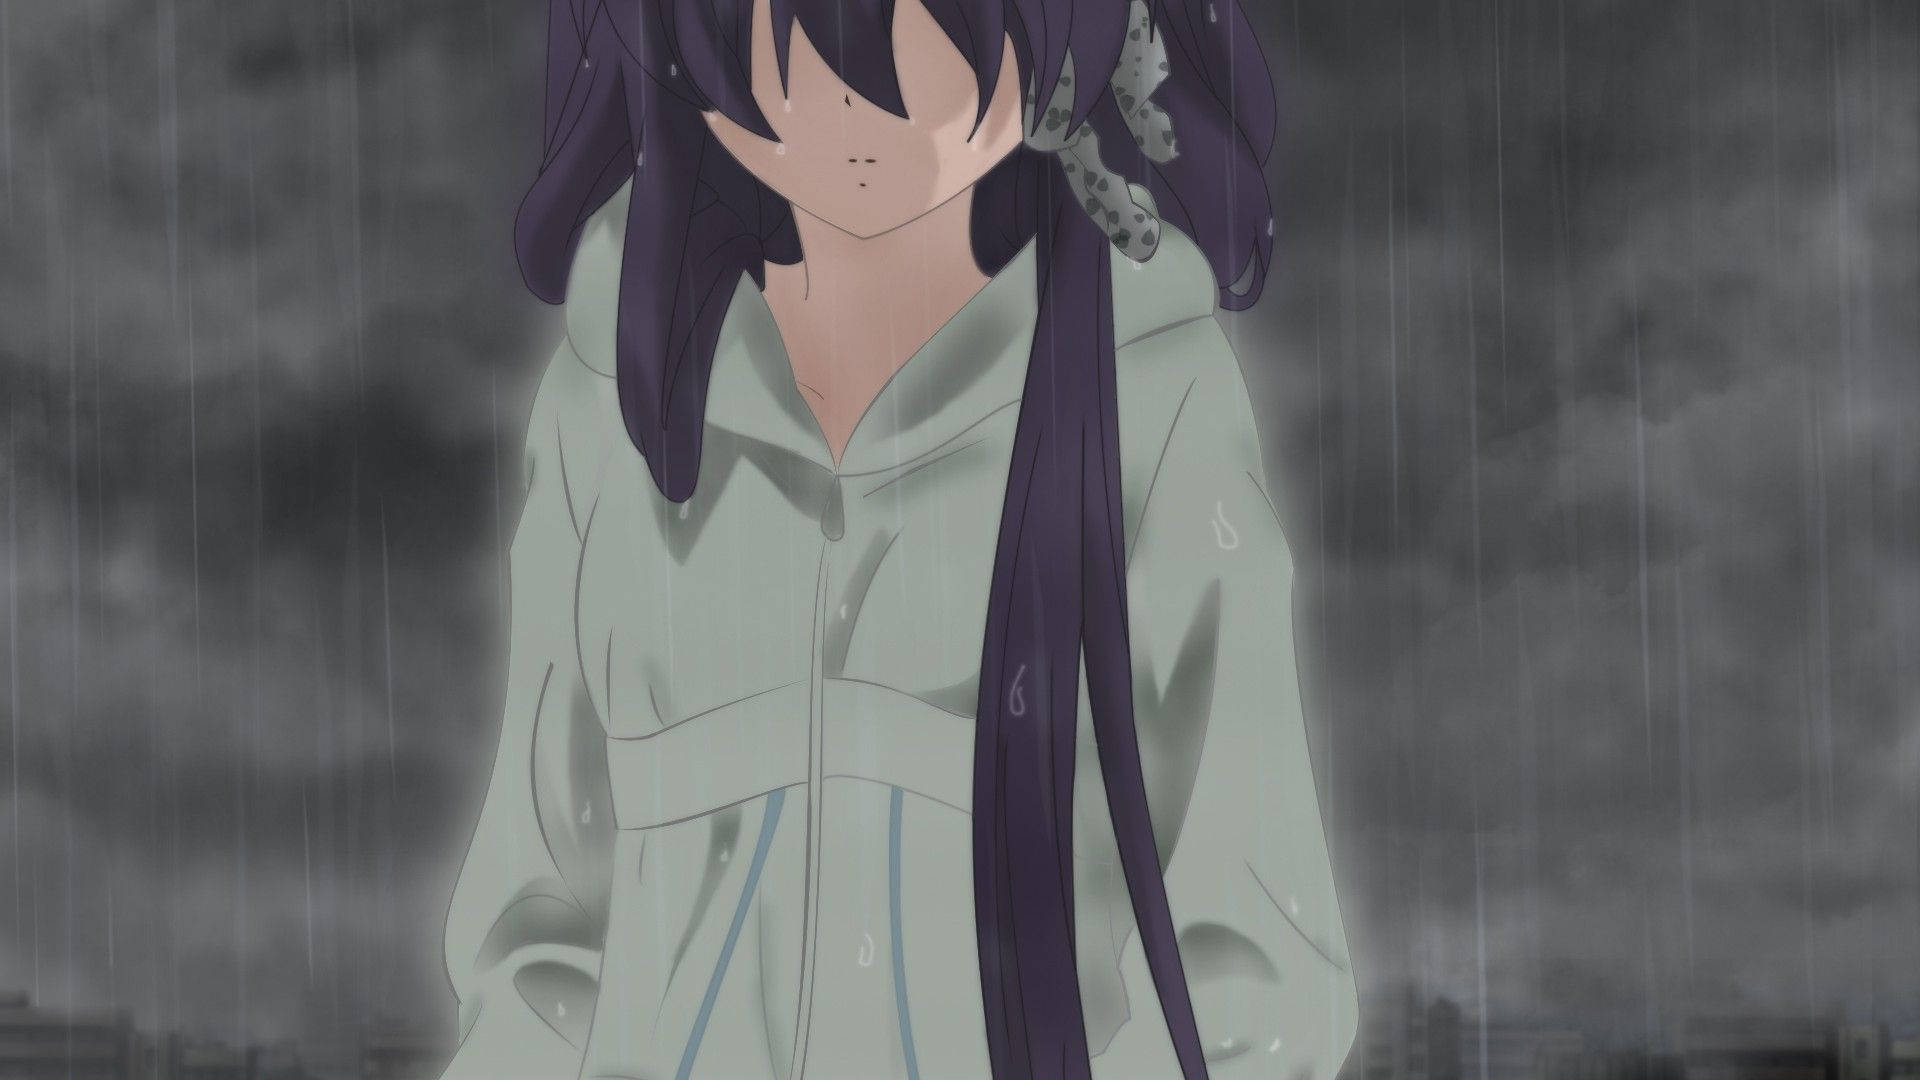 Depressed Anime Girl Background Wallpaper